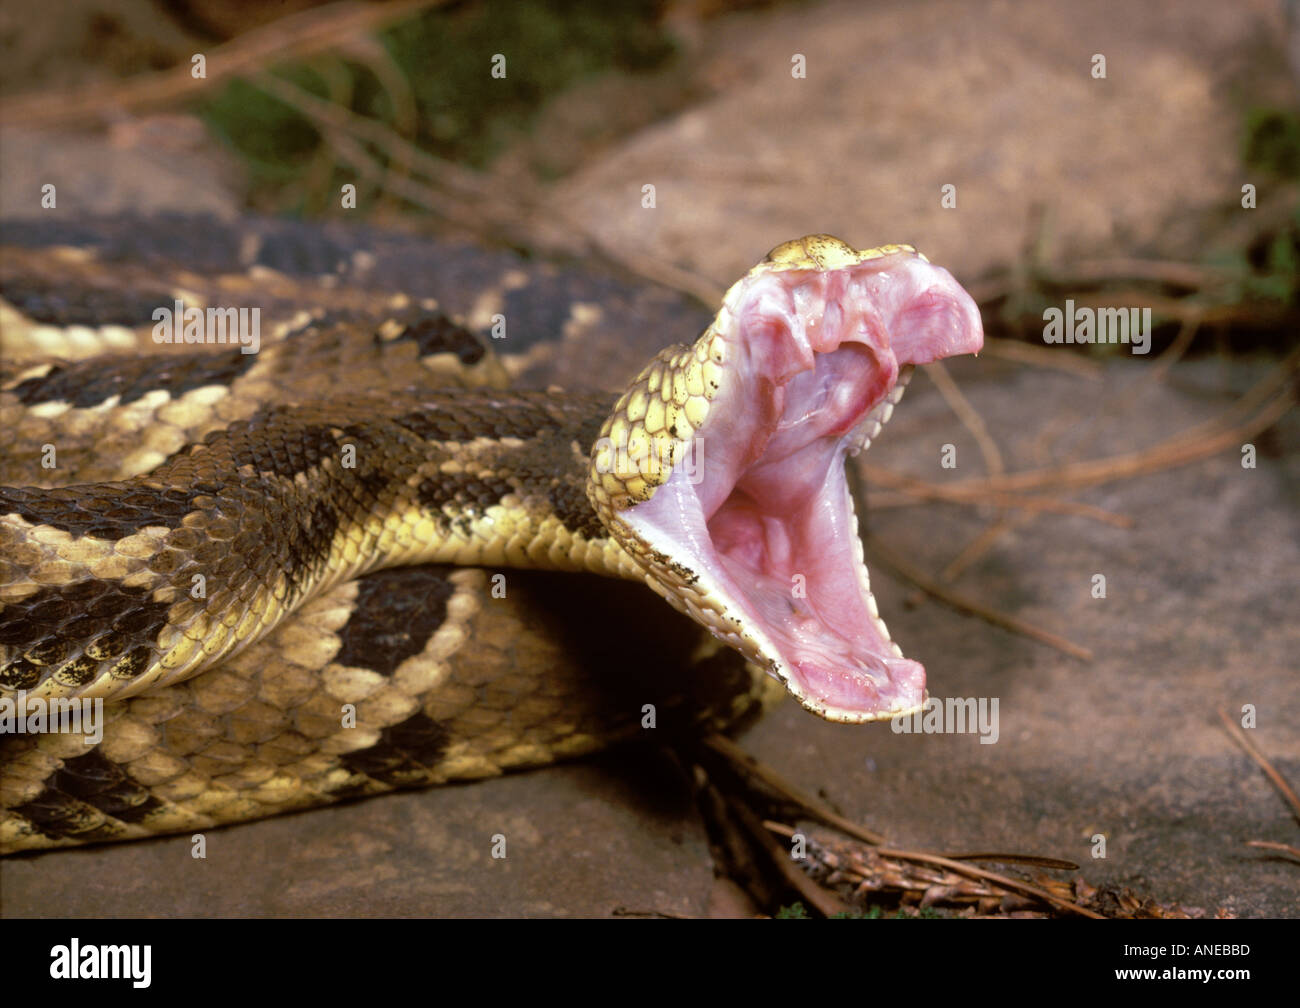 Timber Rattlesnake Bearing Fangs Stock Photo